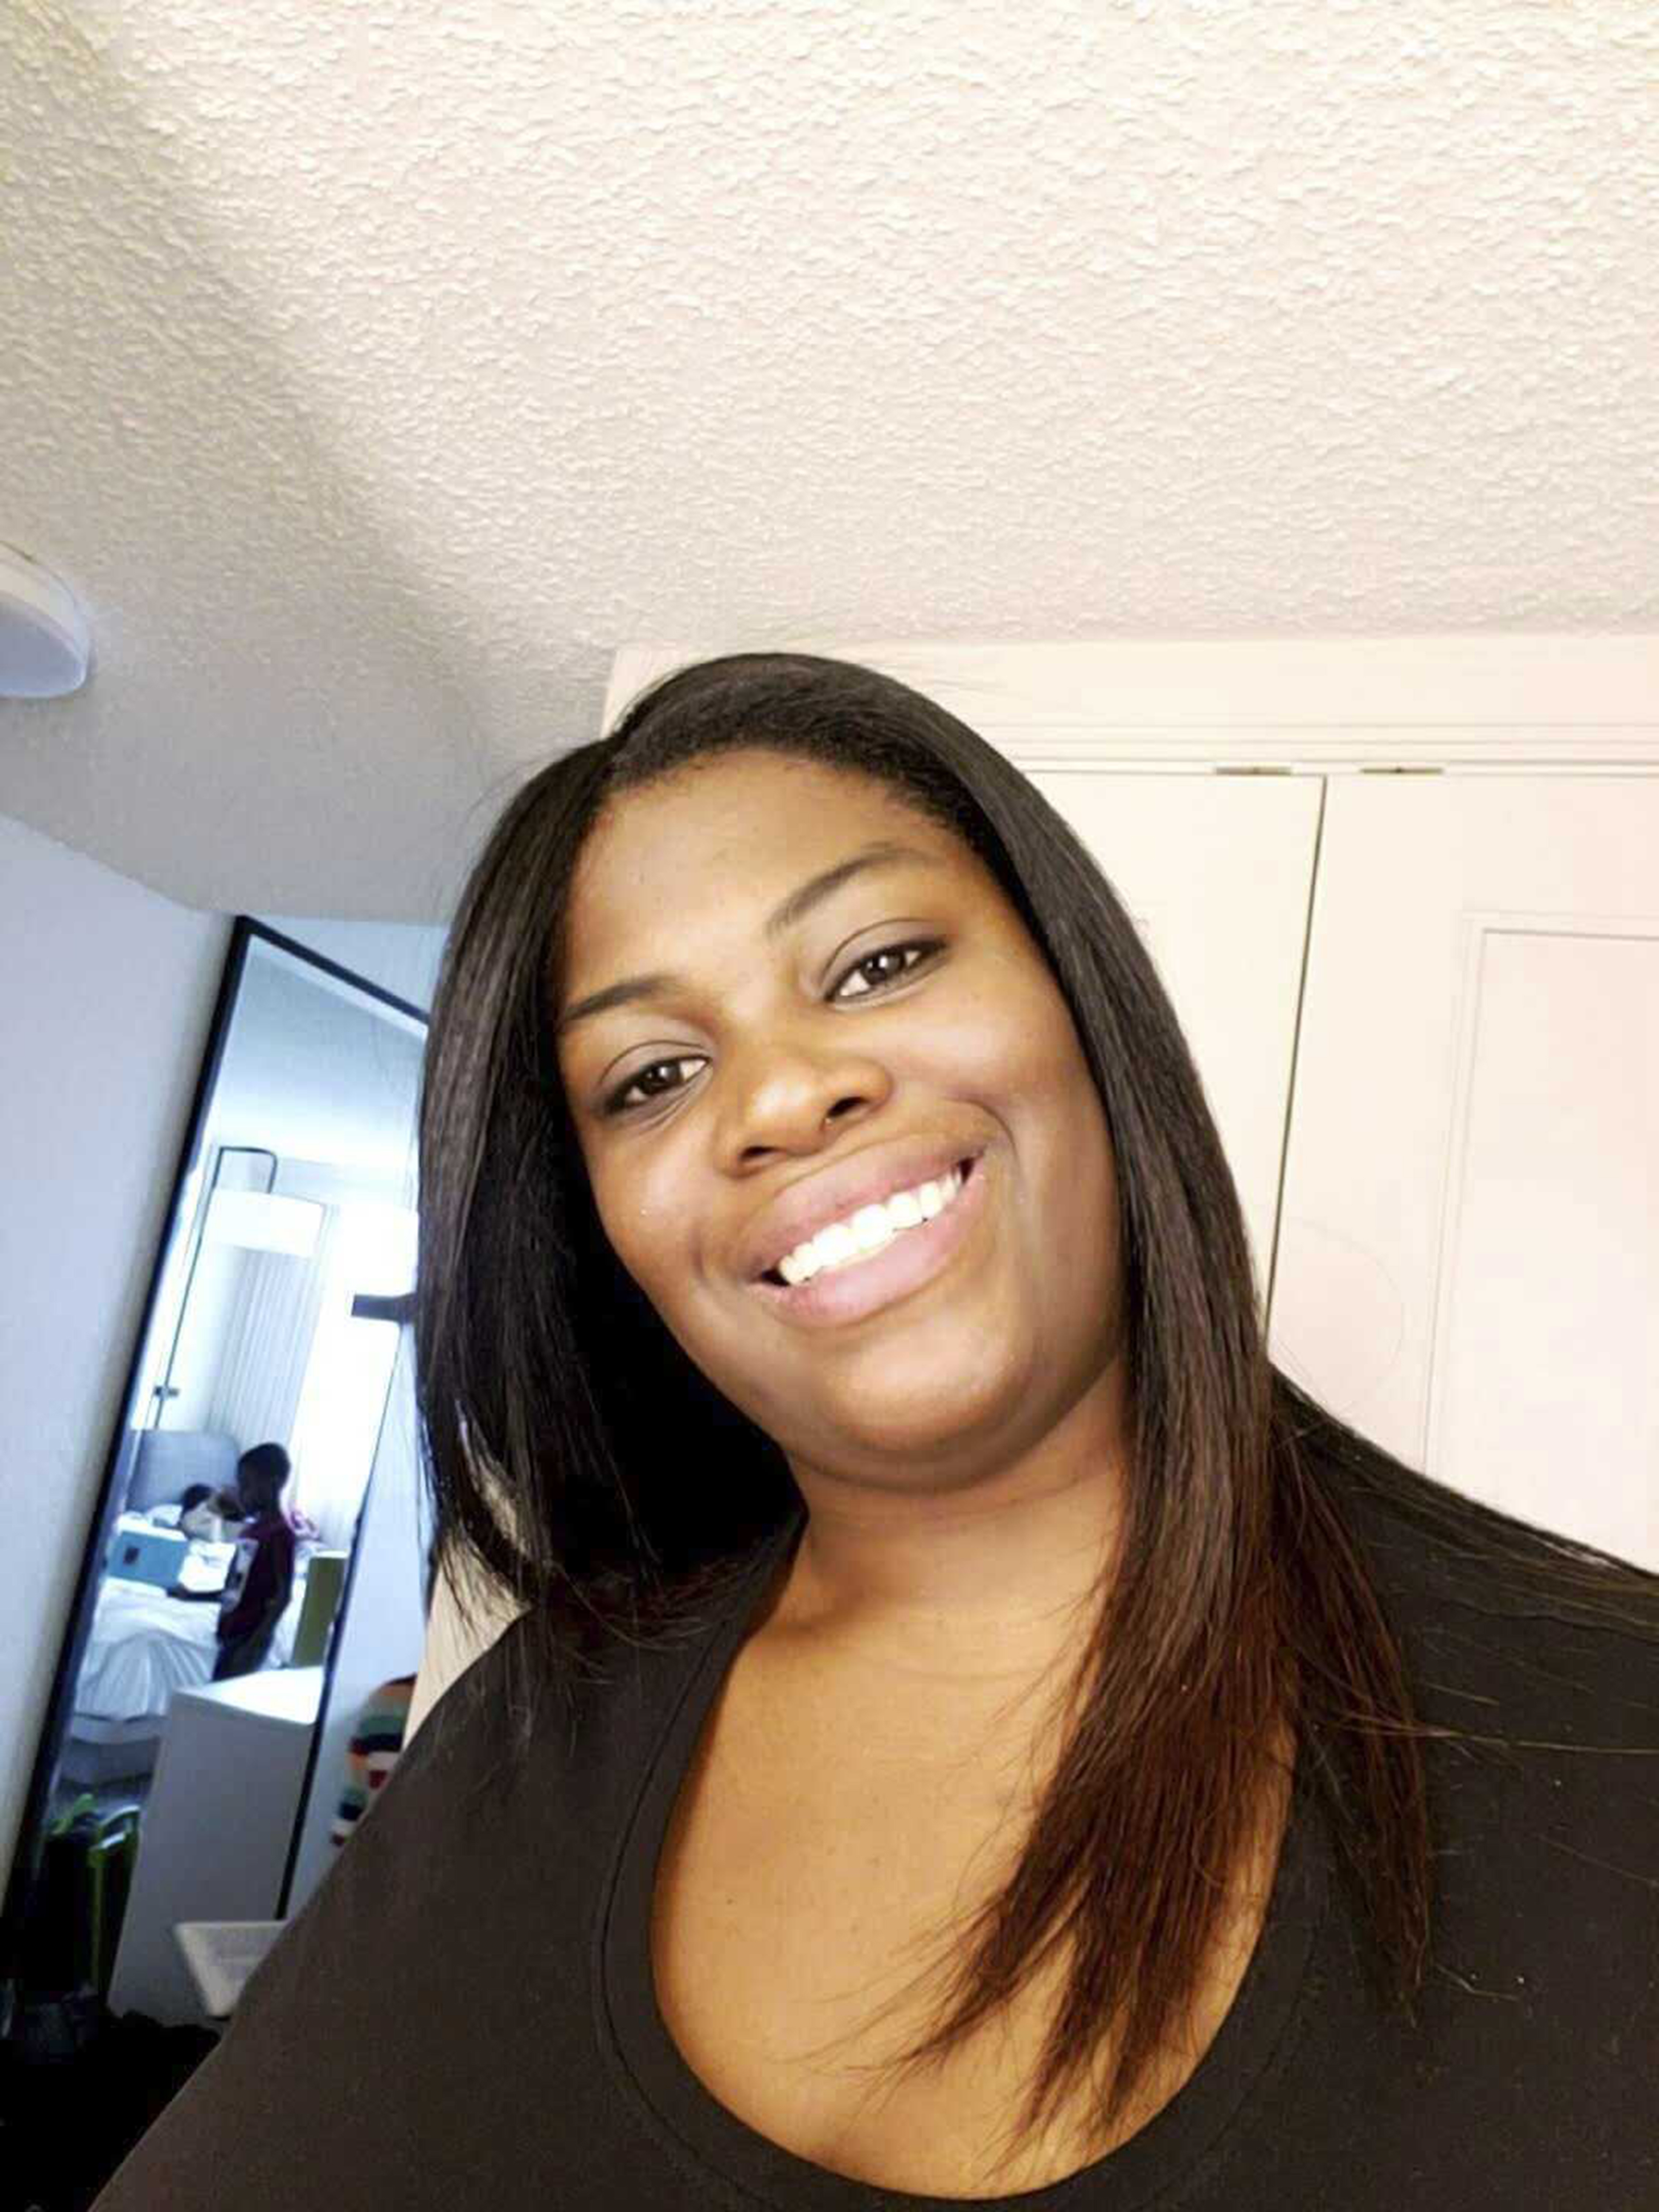 Mujer blanca que disparó fatalmente a vecino negro es arrestada en Florida